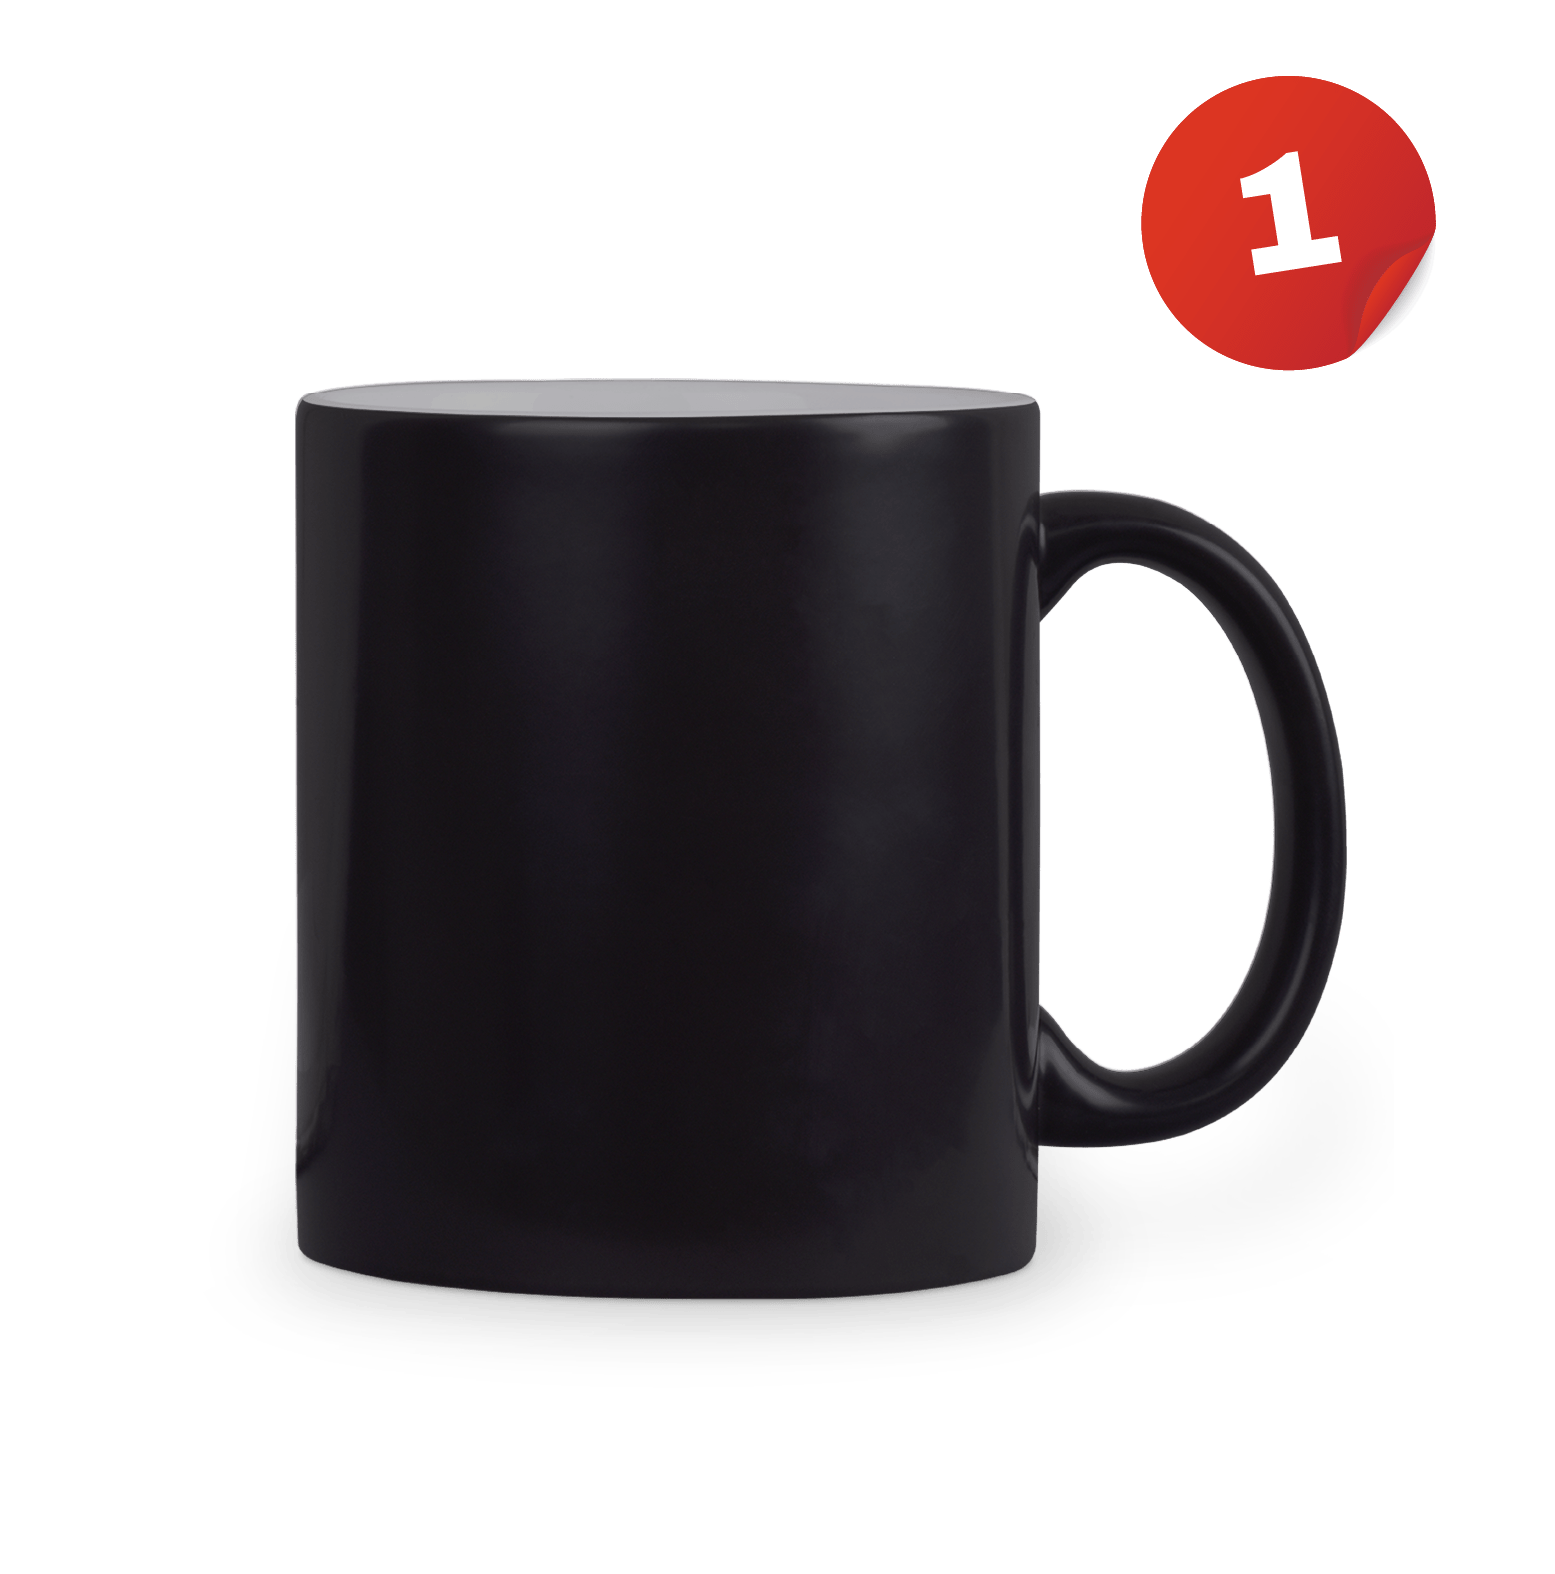 Big Barry UNCENSORED 🍆 - Magic Mug